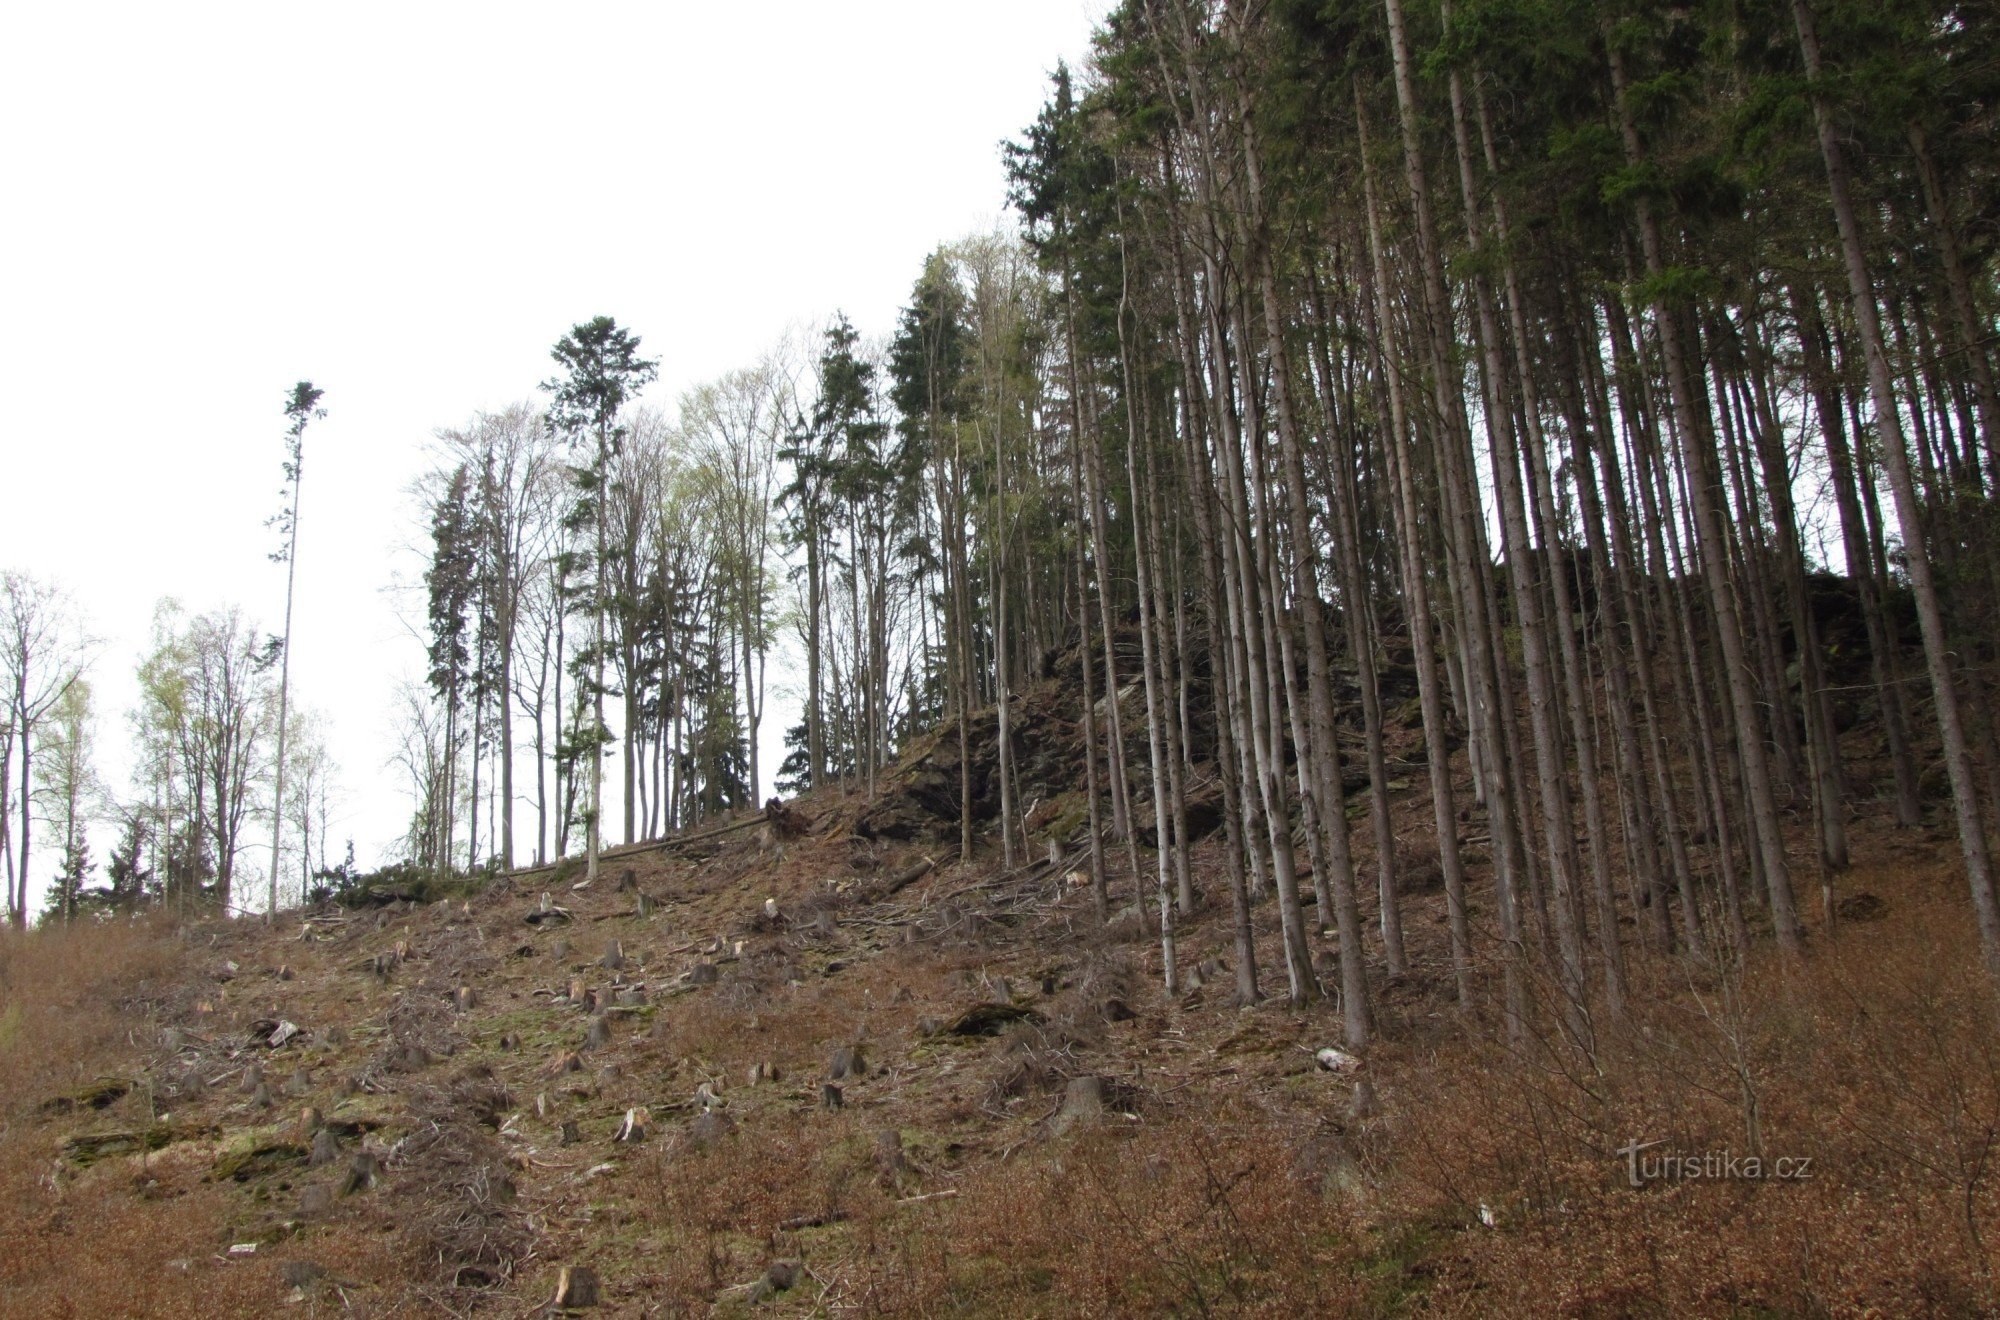 Μια βόλτα στην κοιλάδα Hučava